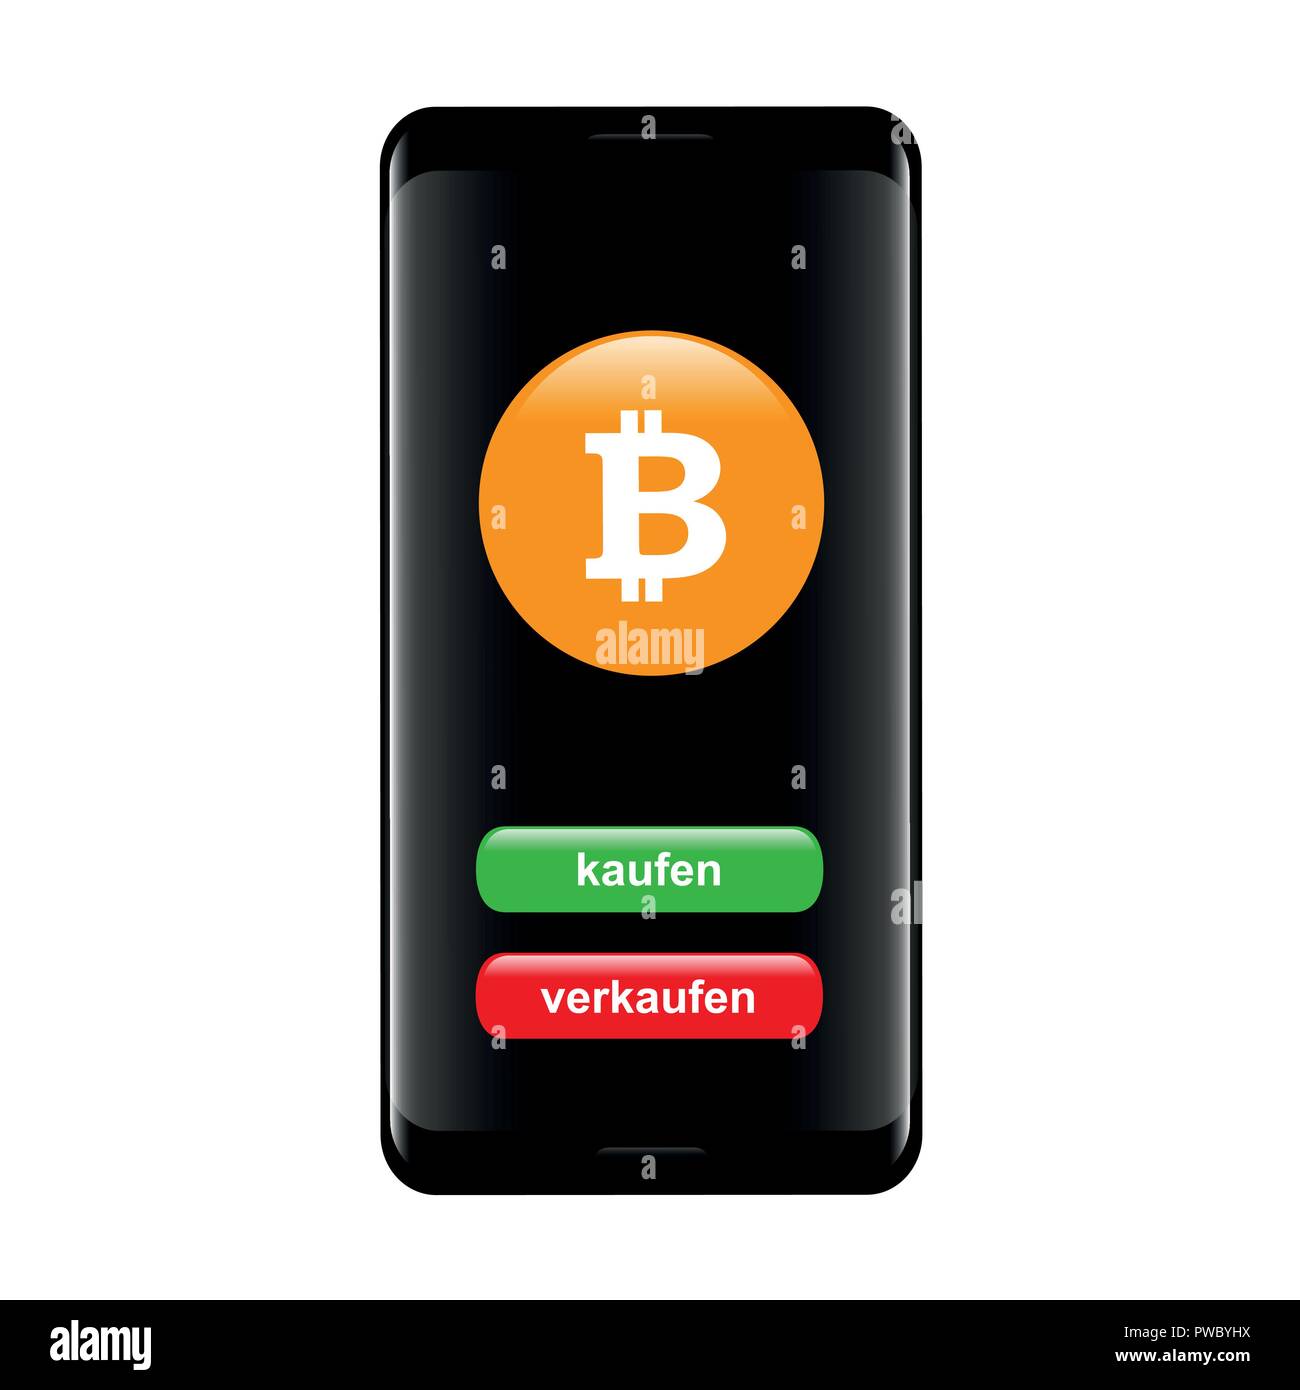 Bitcoin exchange Mobile Banking mit Tasten kaufen und verkaufen in einem Smartphone Vektor-illustration EPS 10. Stock Vektor